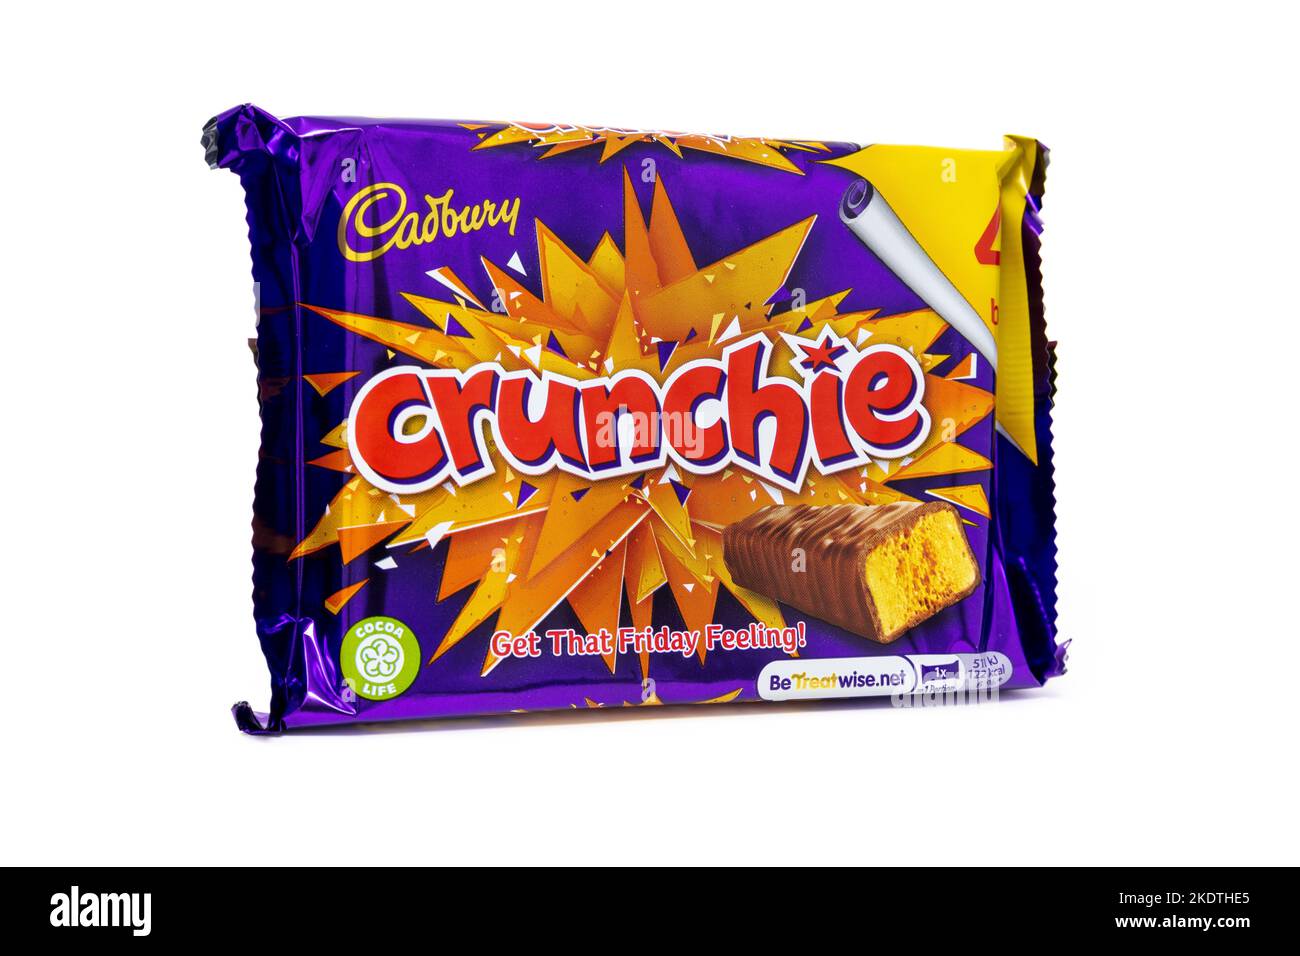 Cadbury Crunchie Chocolate Bar 4 Pack Stock Photo